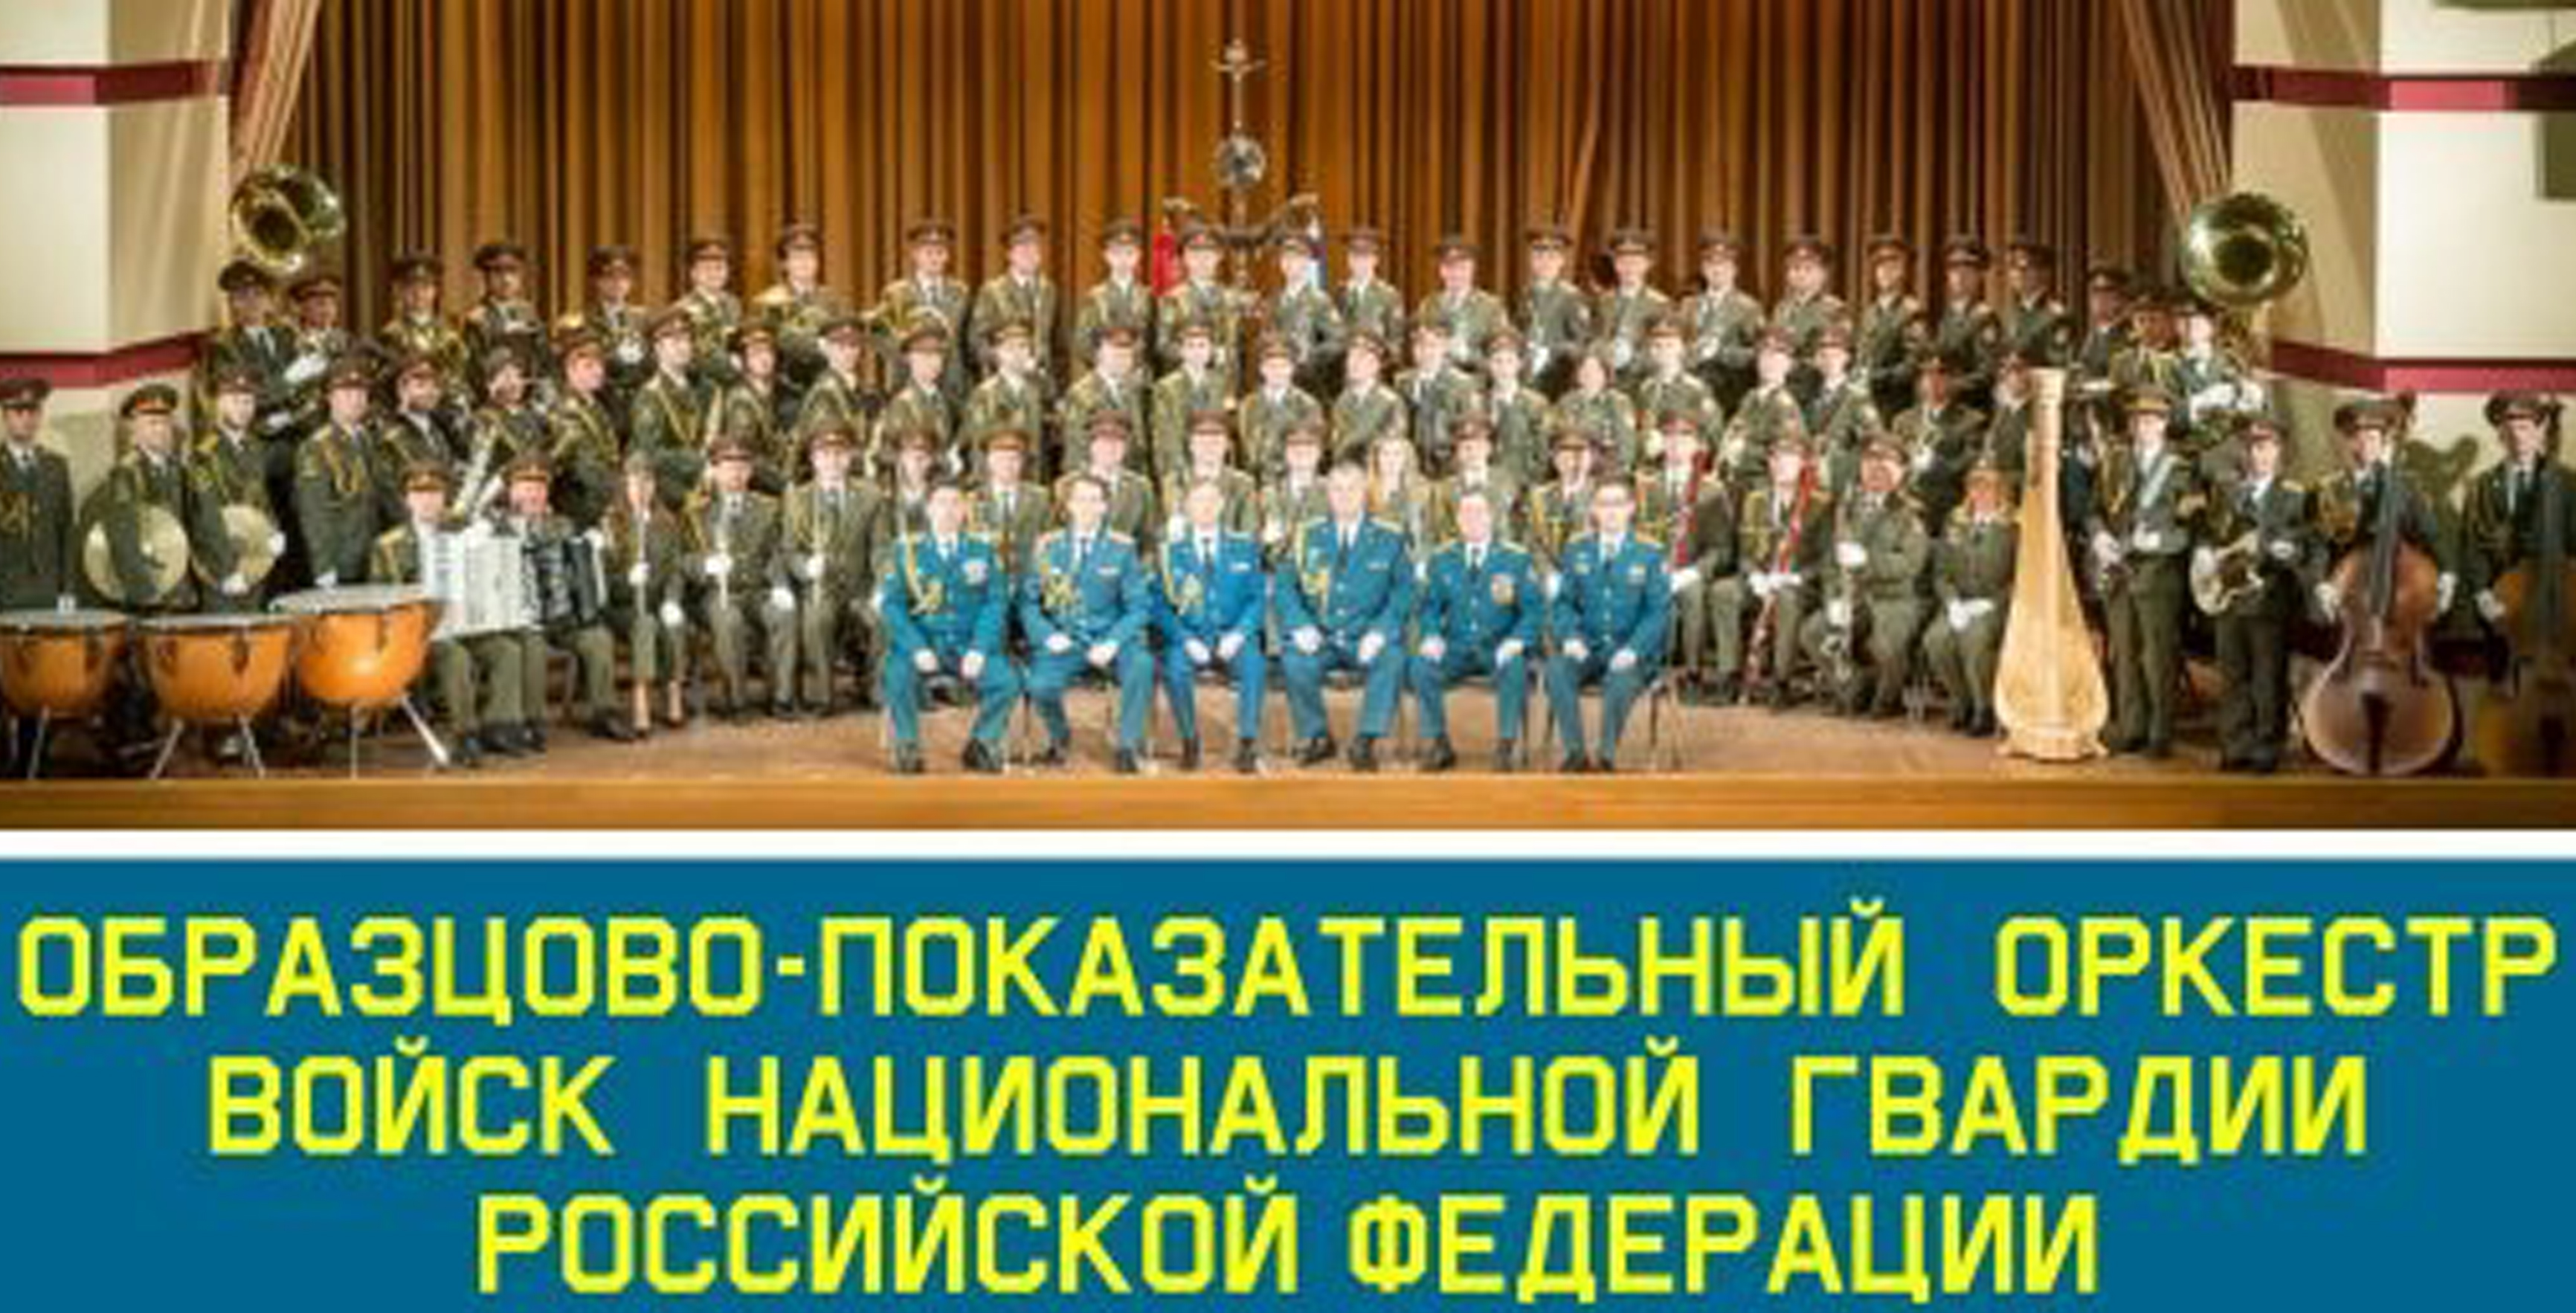 Образцово-показательного оркестра войск национальной гвардии Российской
                    Федерации.